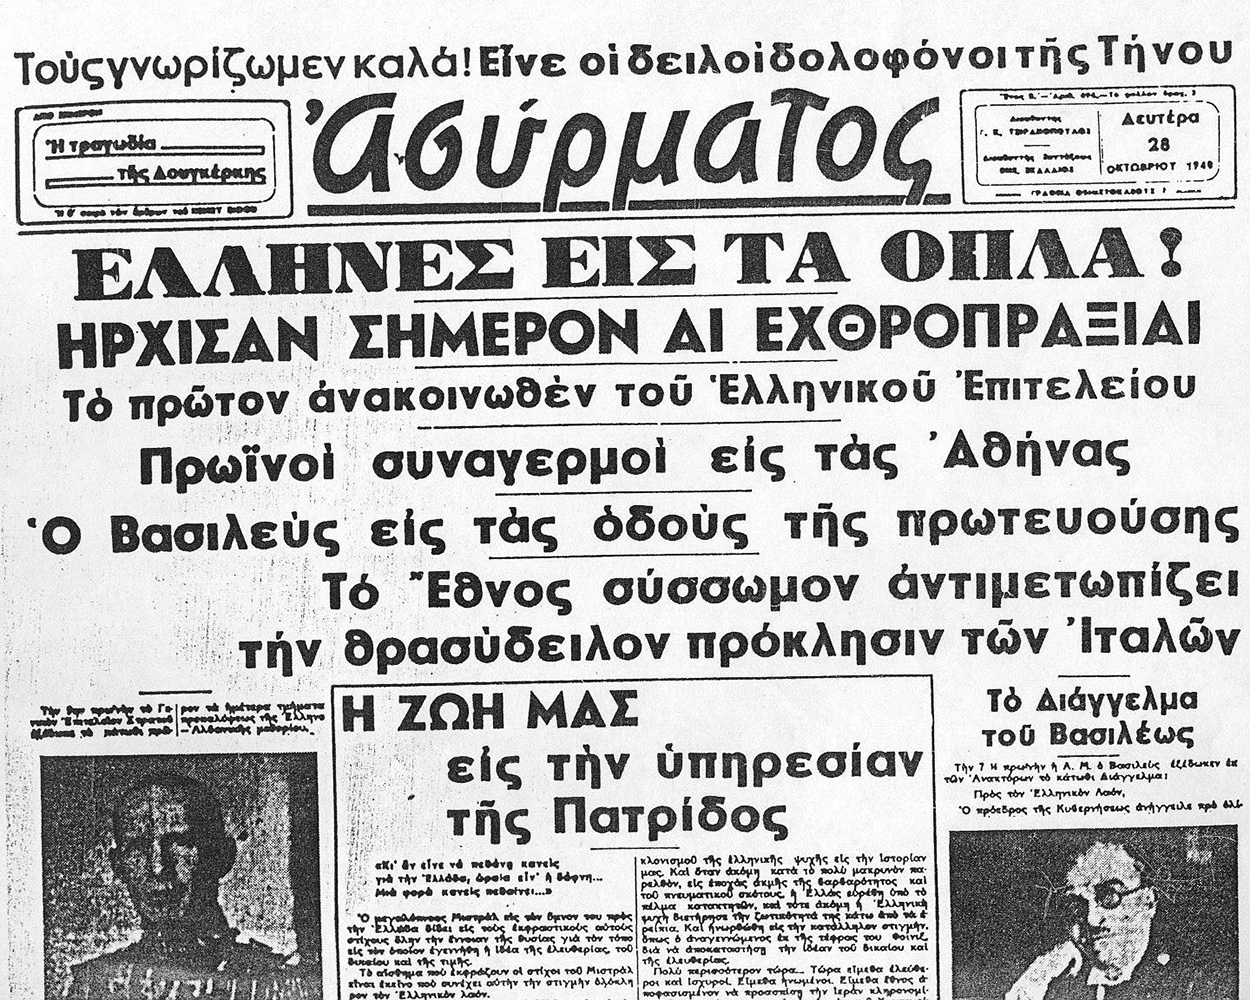 Μικρό αφιέρωμα: Πρωτοσέλιδα εφημερίδων 28η Οκτωβρίου 1940 - STEREA NEWS